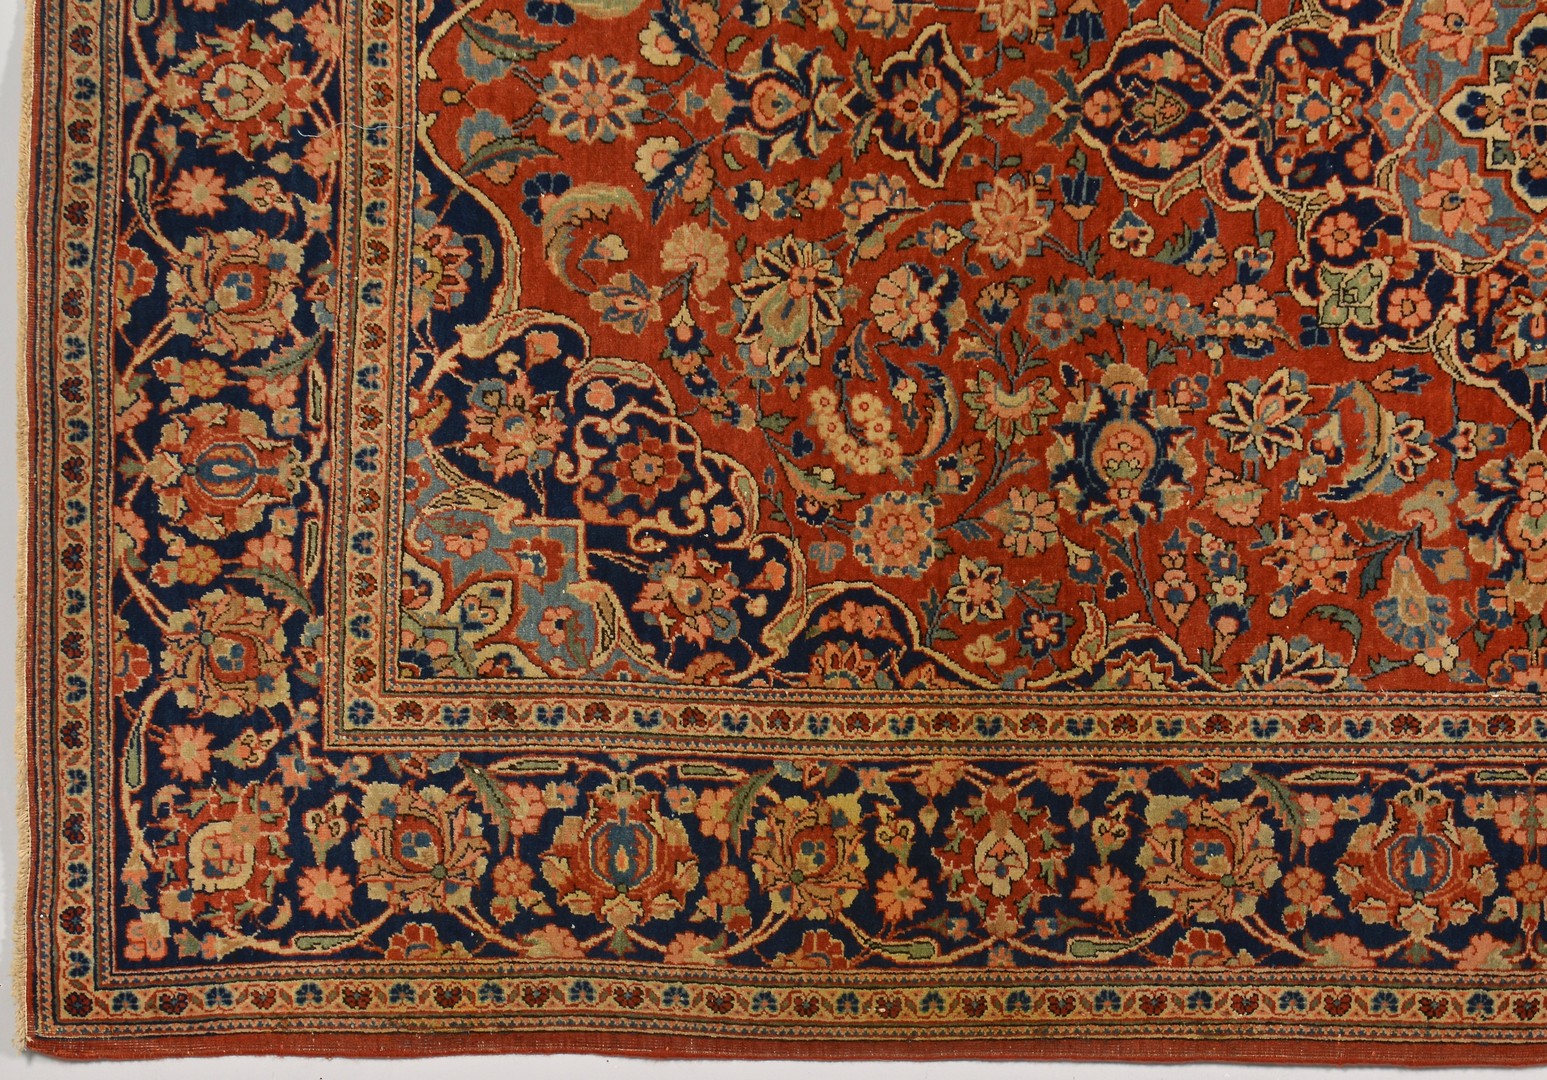 Lot 248: Persian Kashan area rug, c. 1920-30